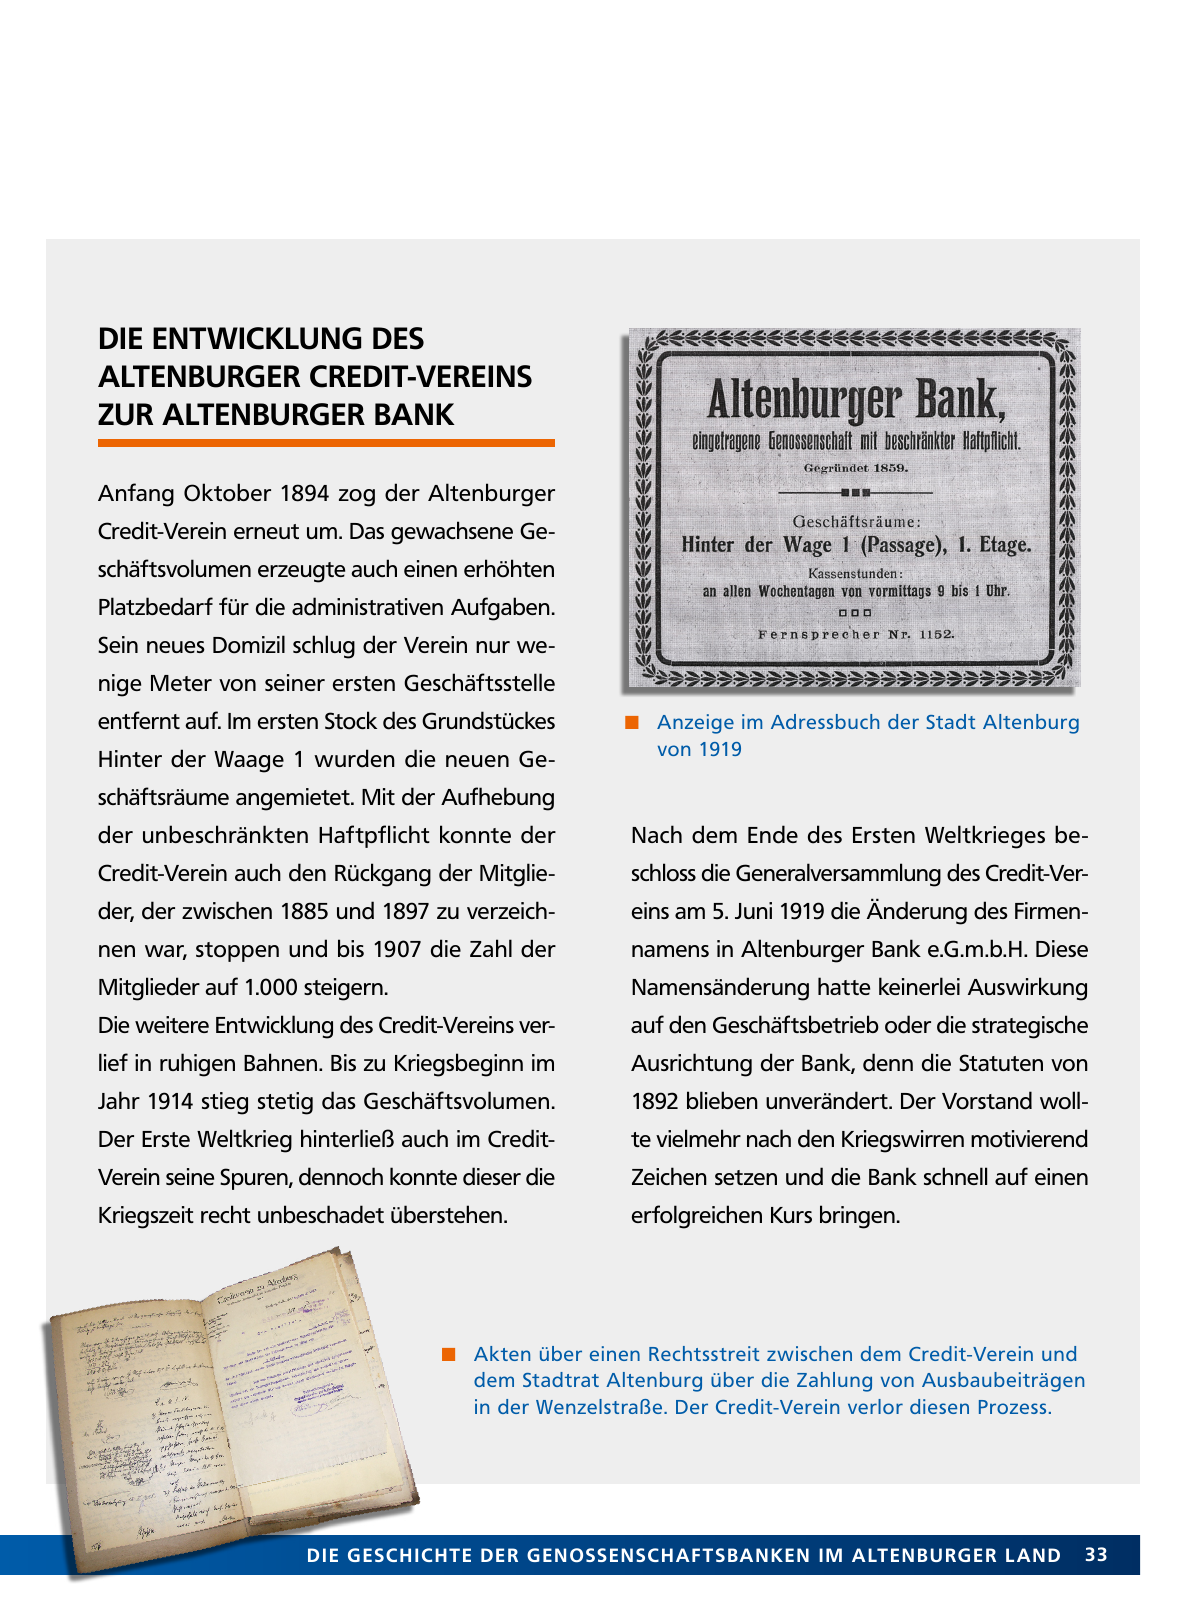 Vorschau Von der Idee, sich selbst zu helfen – 150 Jahre genossenschaftliches Bankwesen im Altenburger Land Seite 33